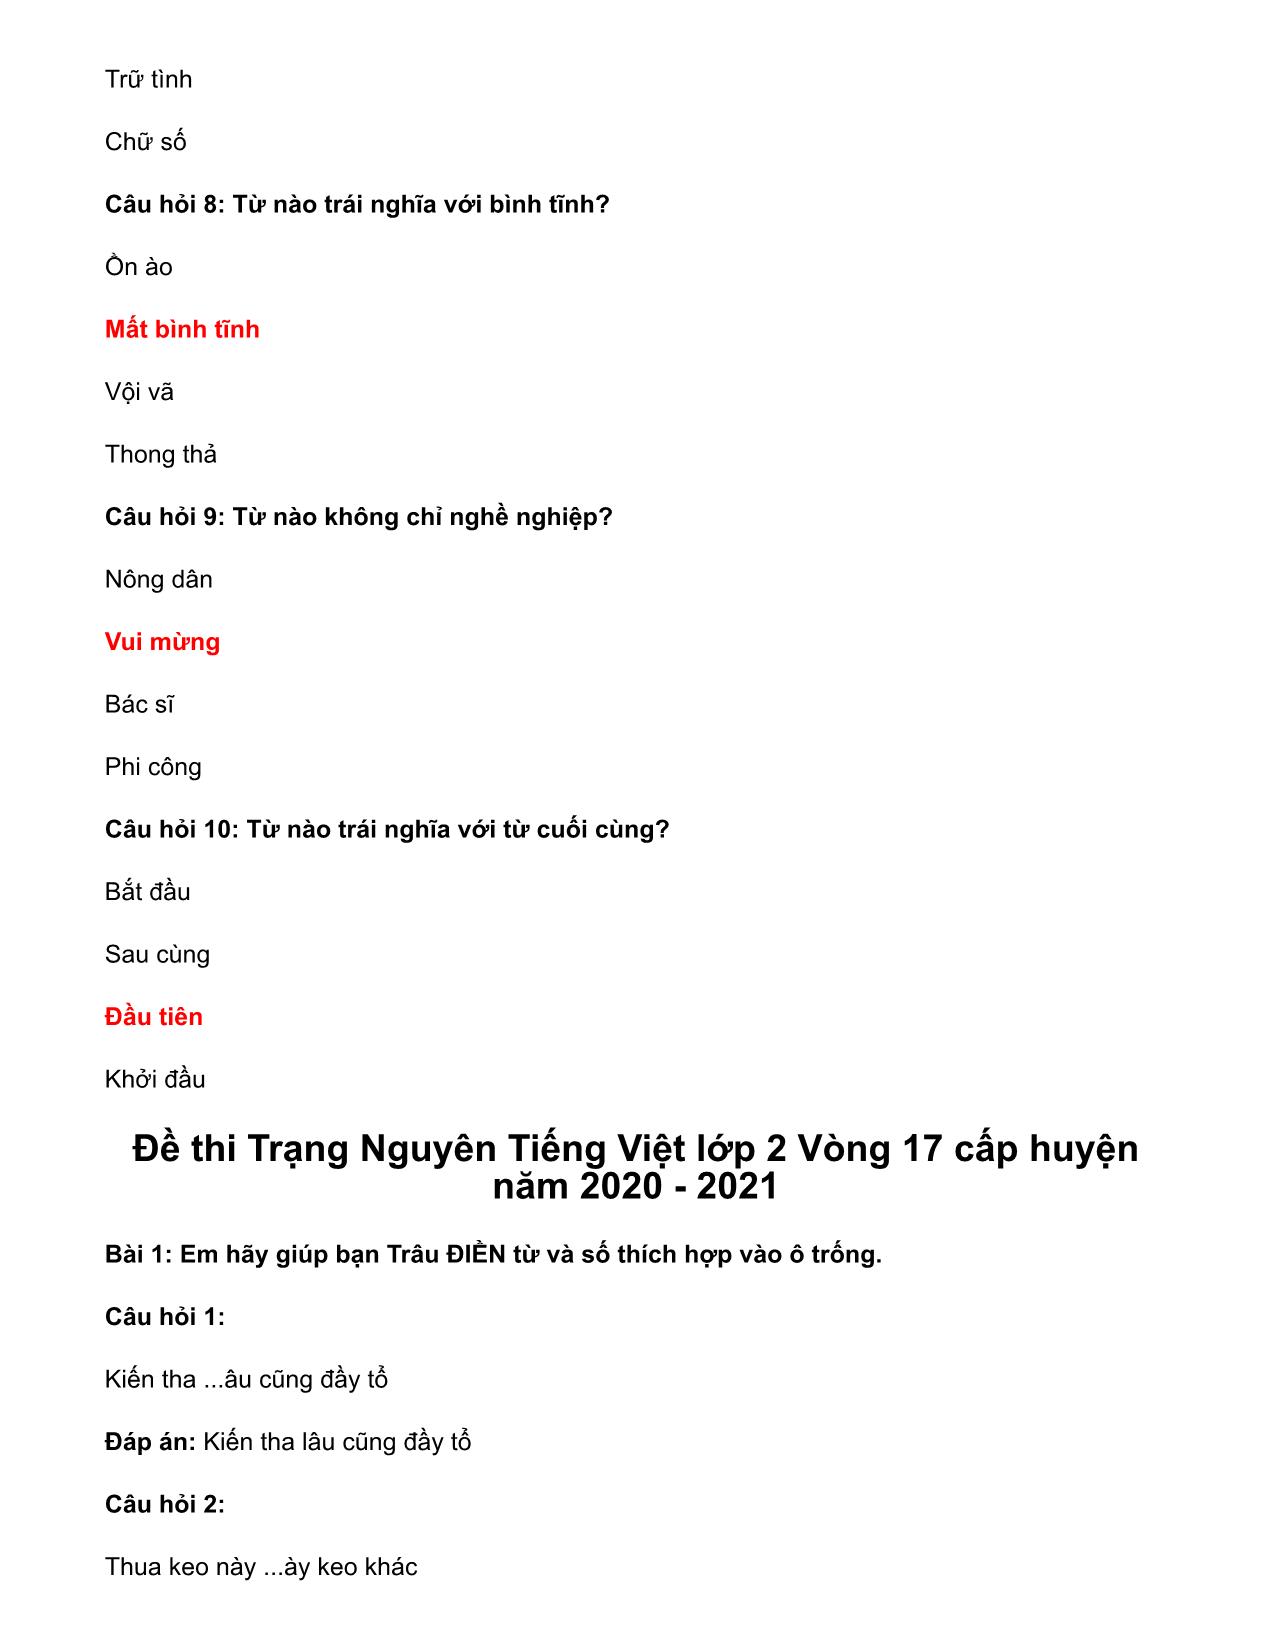 Đề ôn thi Trạng Nguyên Tiếng Việt Lớp 2 - Vòng 19 trang 6